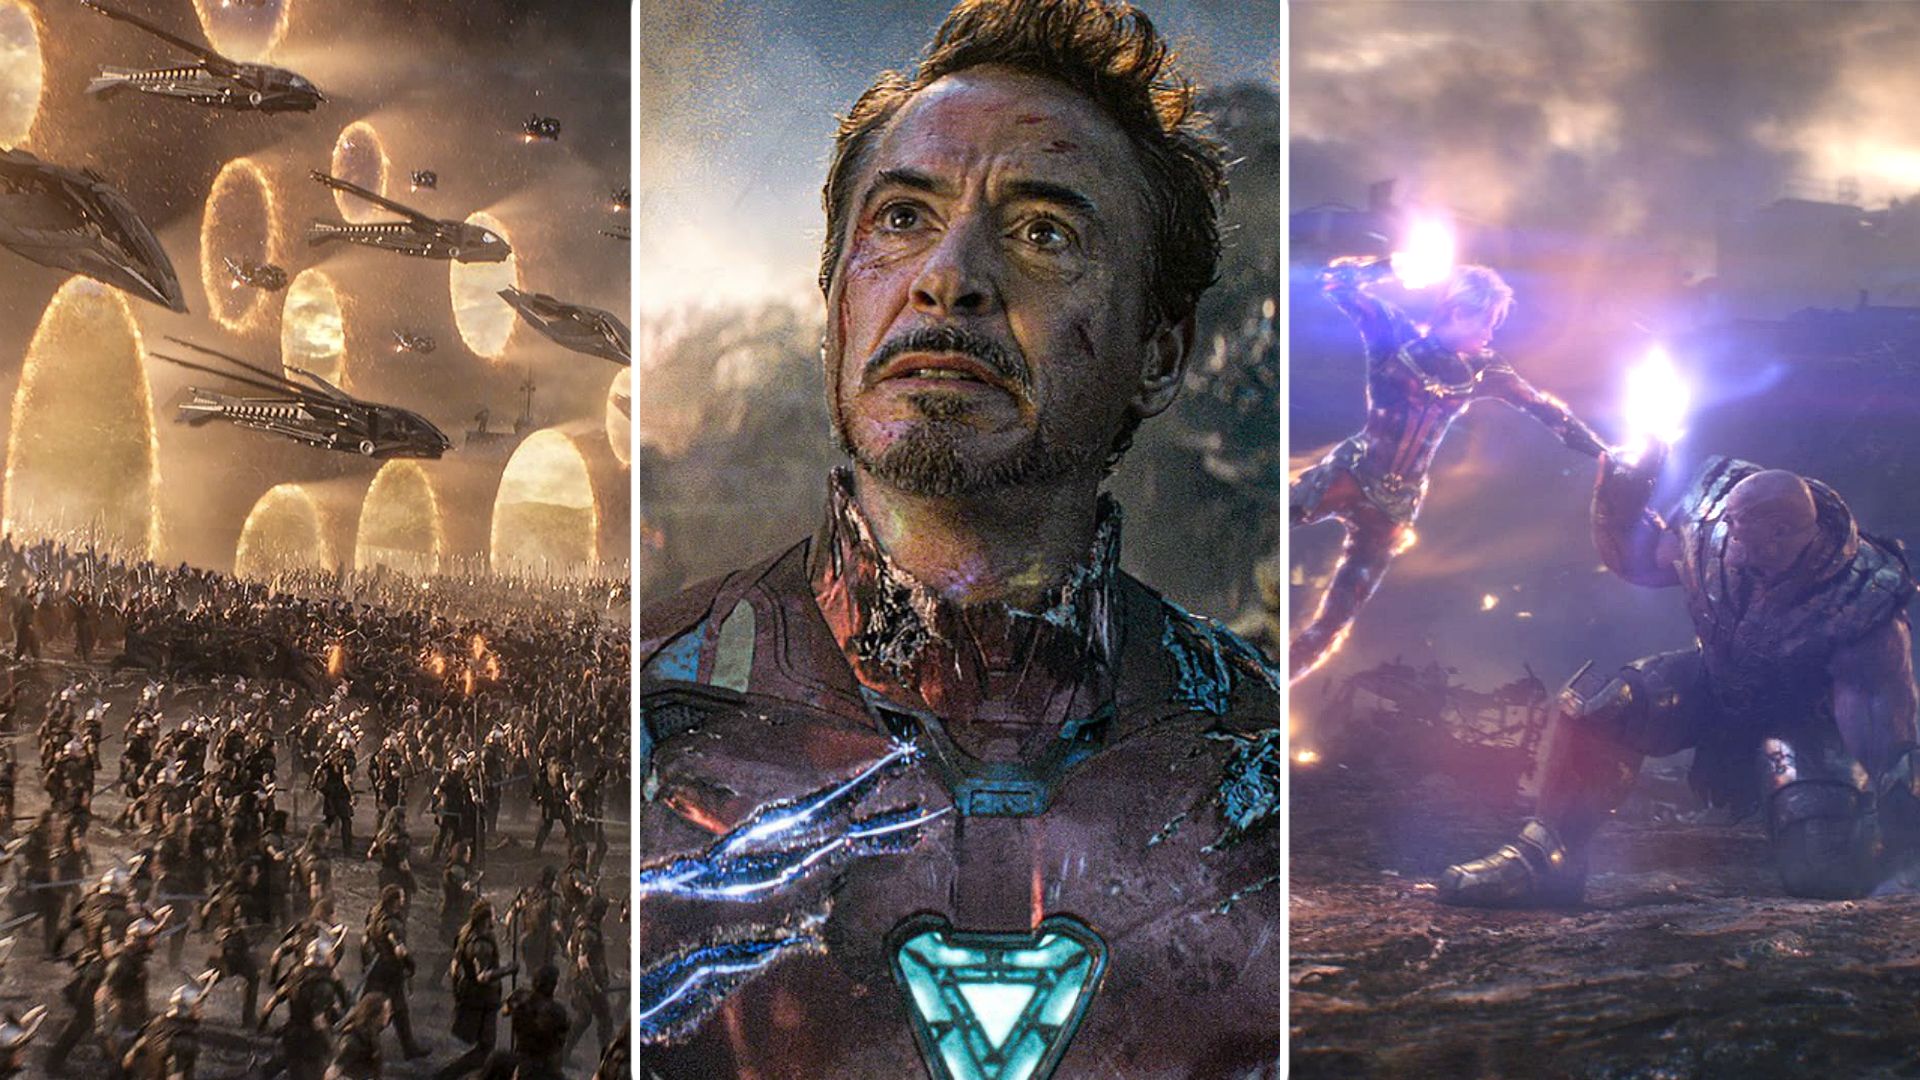 Marvel Releases 'Moving' Deleted Scene From 'Avengers: Endgame